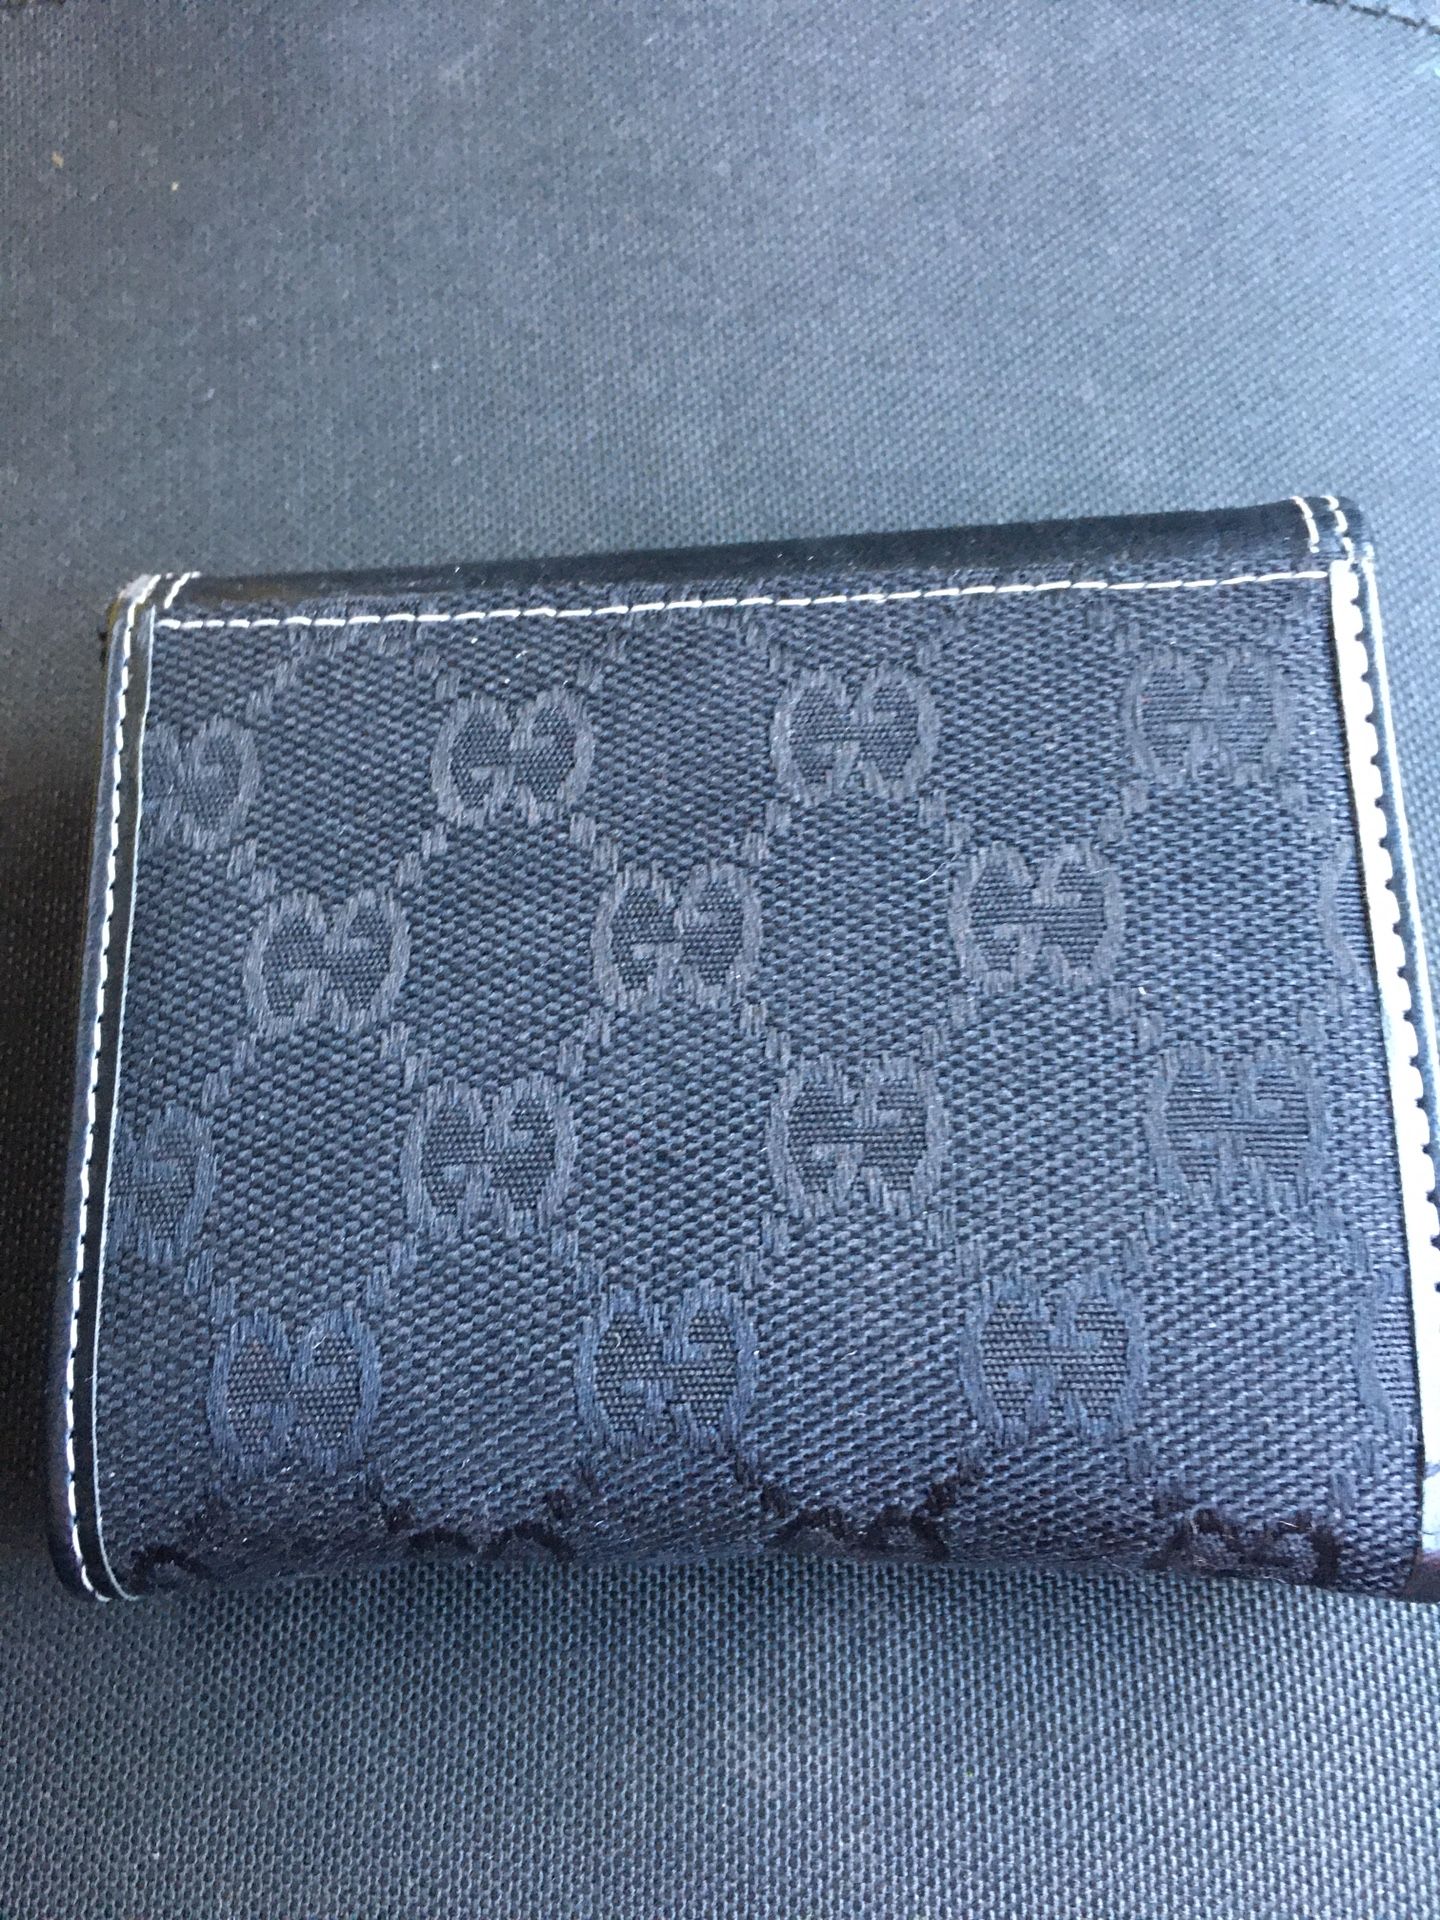 Women Gucci wallet